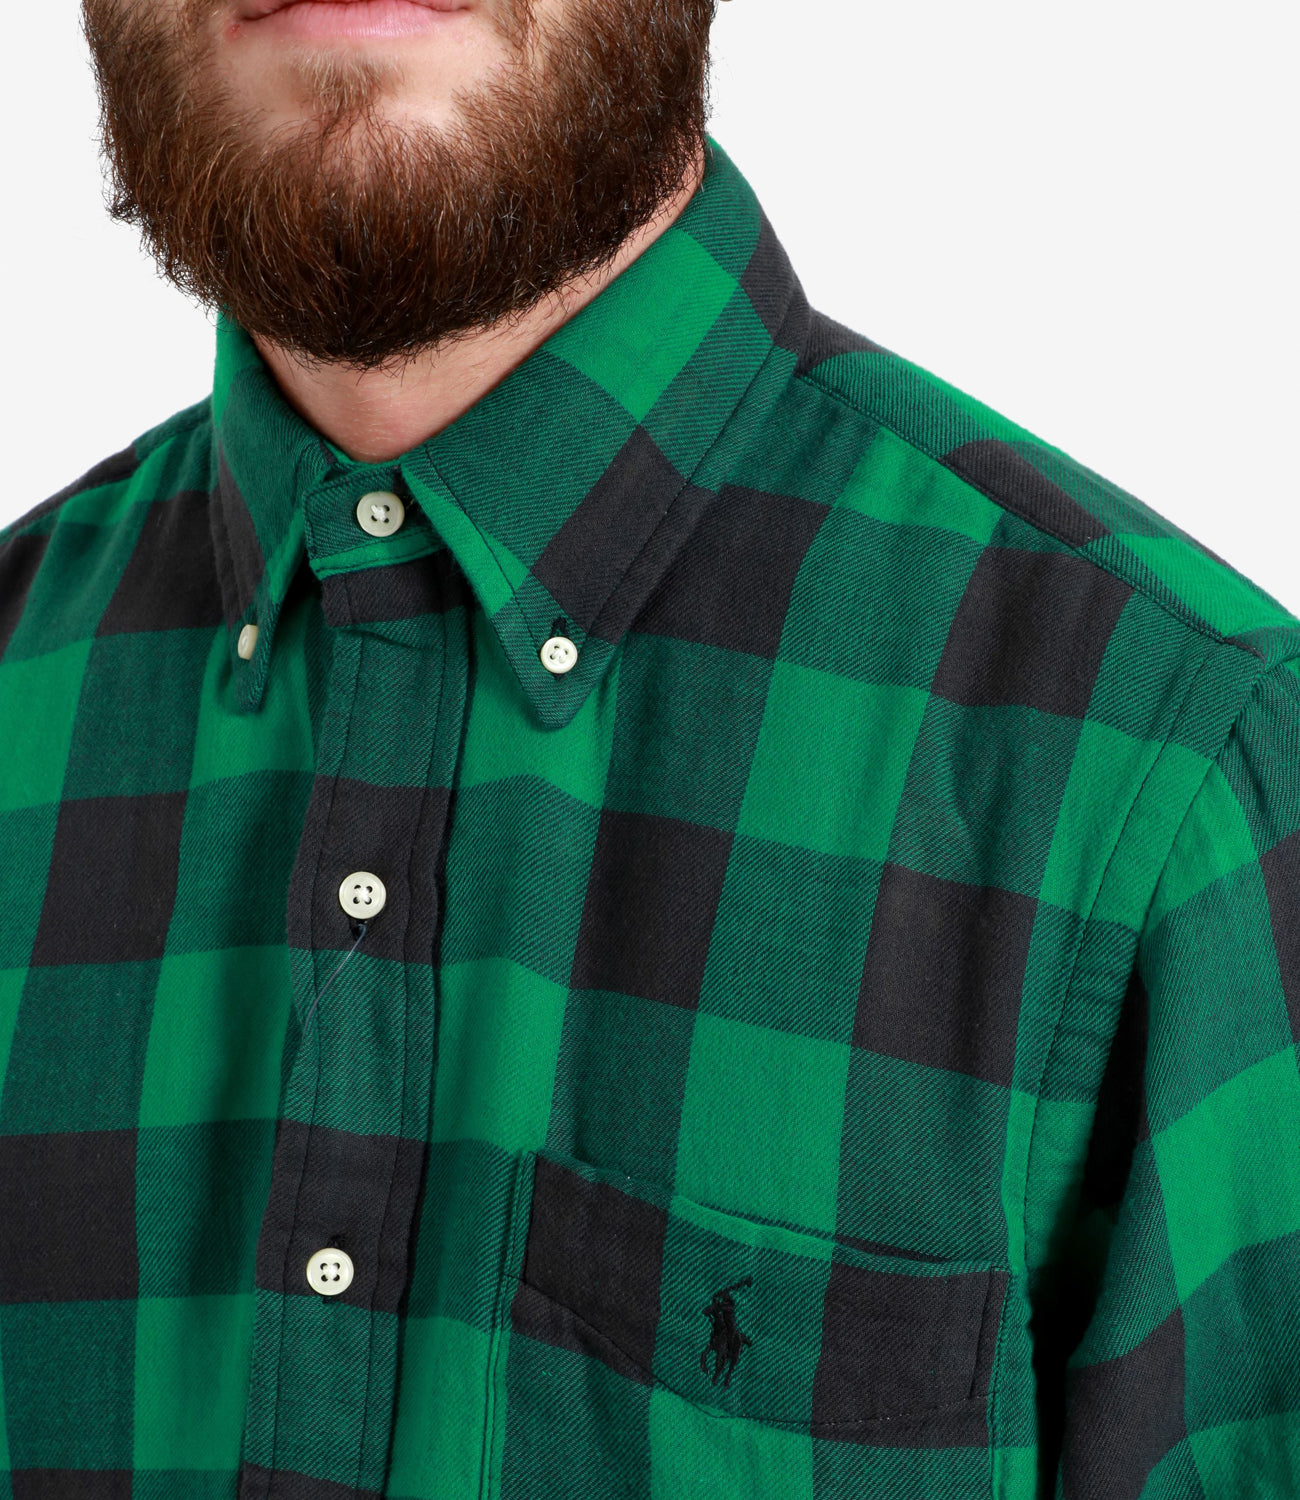 Polo Ralph Lauren | Green and Black Shirt